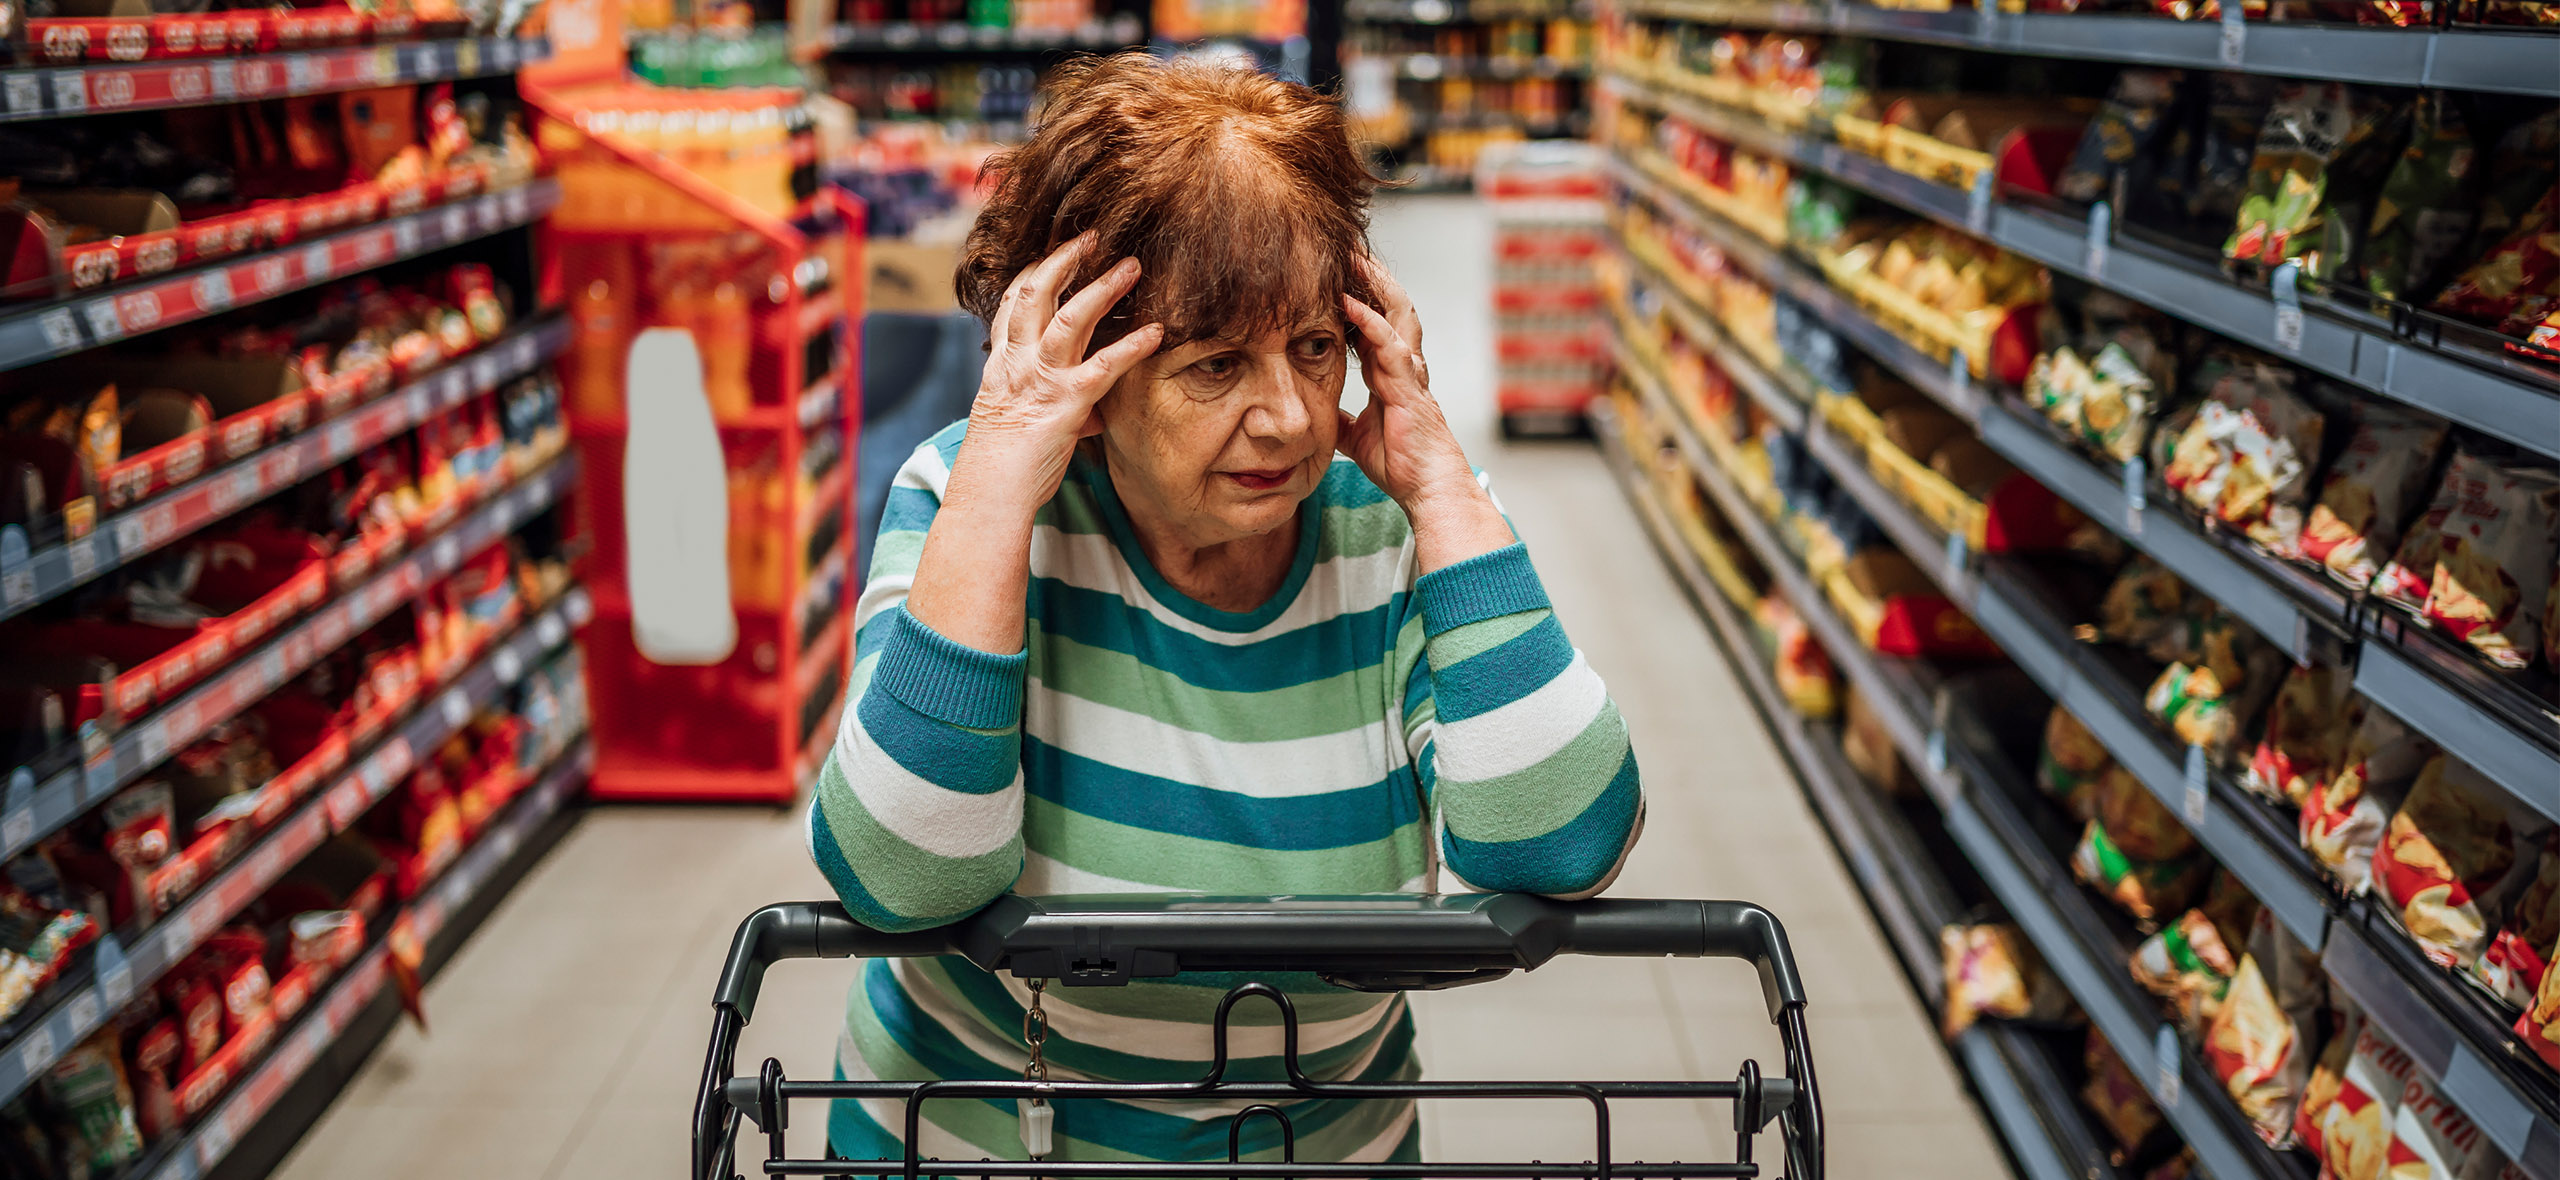 Пищевое отравление и искалеченное лицо: 7 походов в супермаркет, которые закончились судом